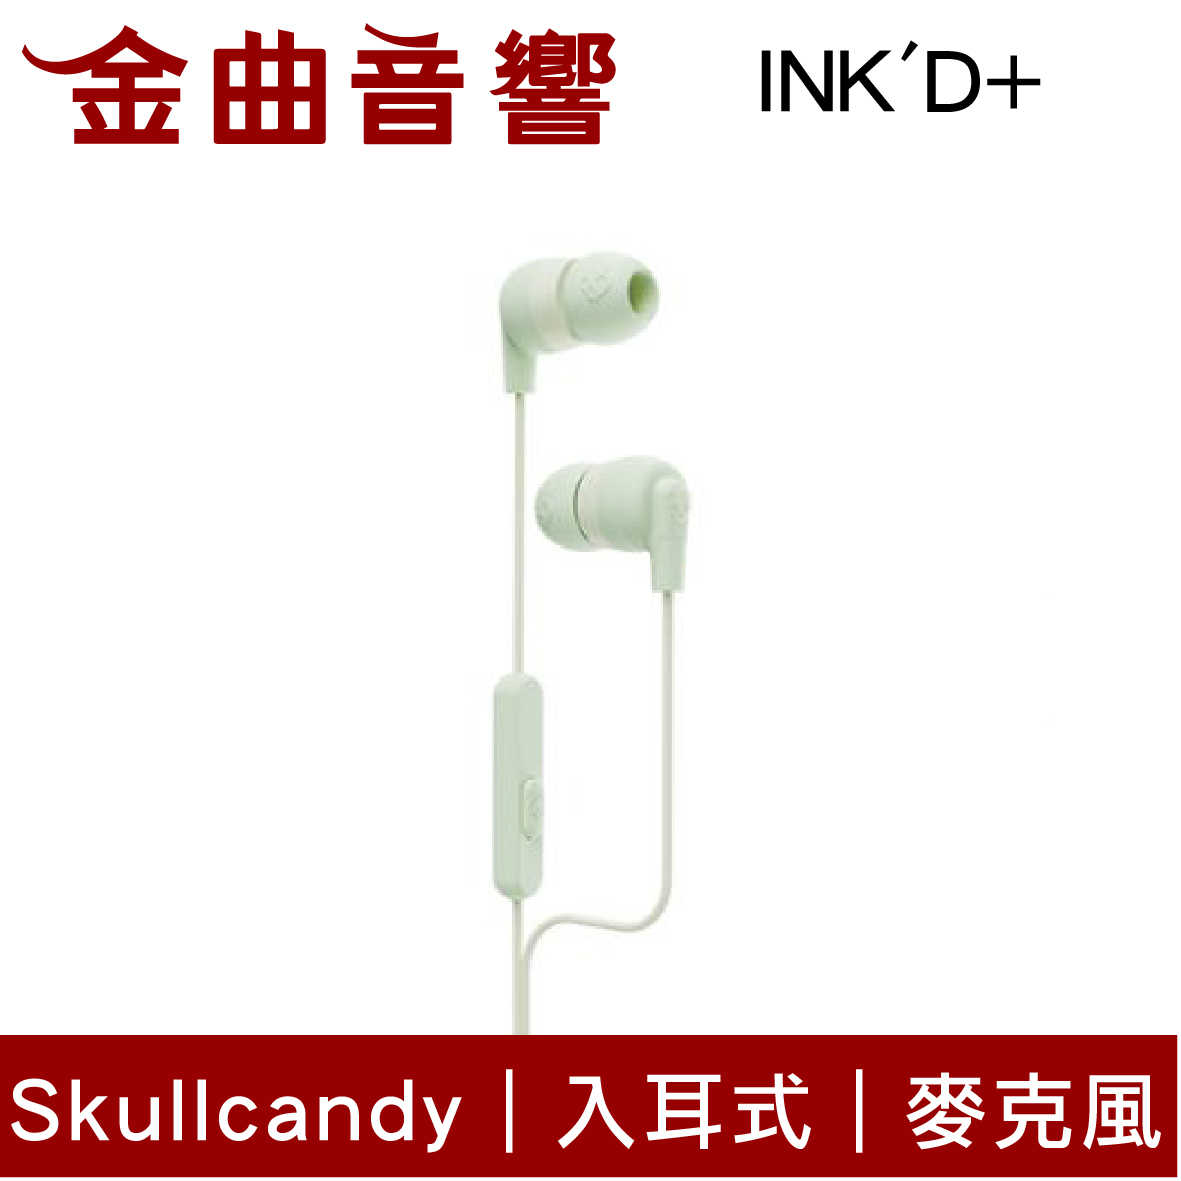 Skullcandy 骷髏糖 INK'D+ 淺綠 有線 內建麥克風 入耳式 耳機 | 金曲音響